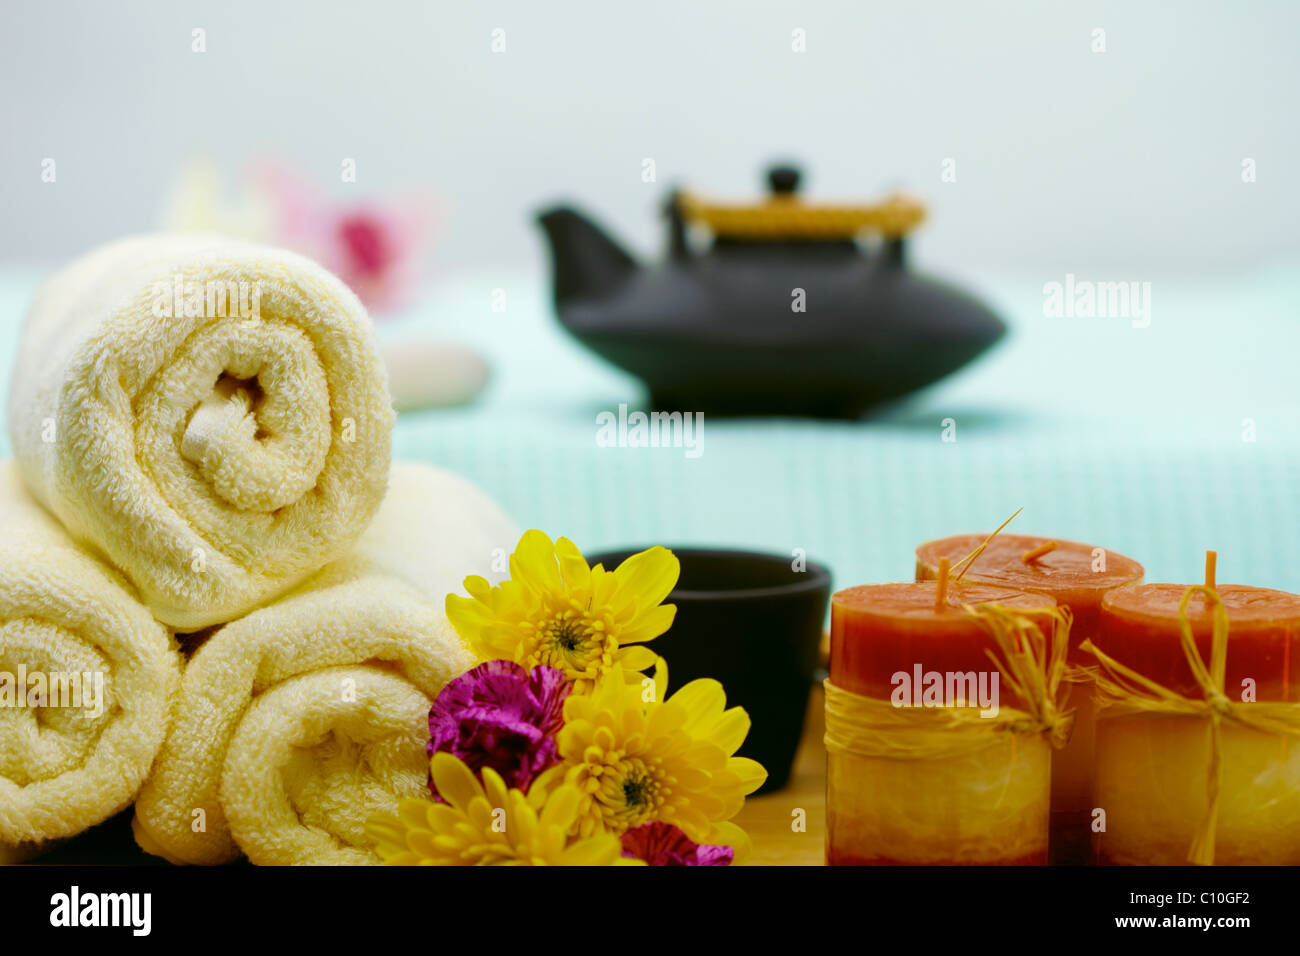 Die Zusammensetzung der Teekanne, Handtücher und Kerzen - Spa Stockfoto